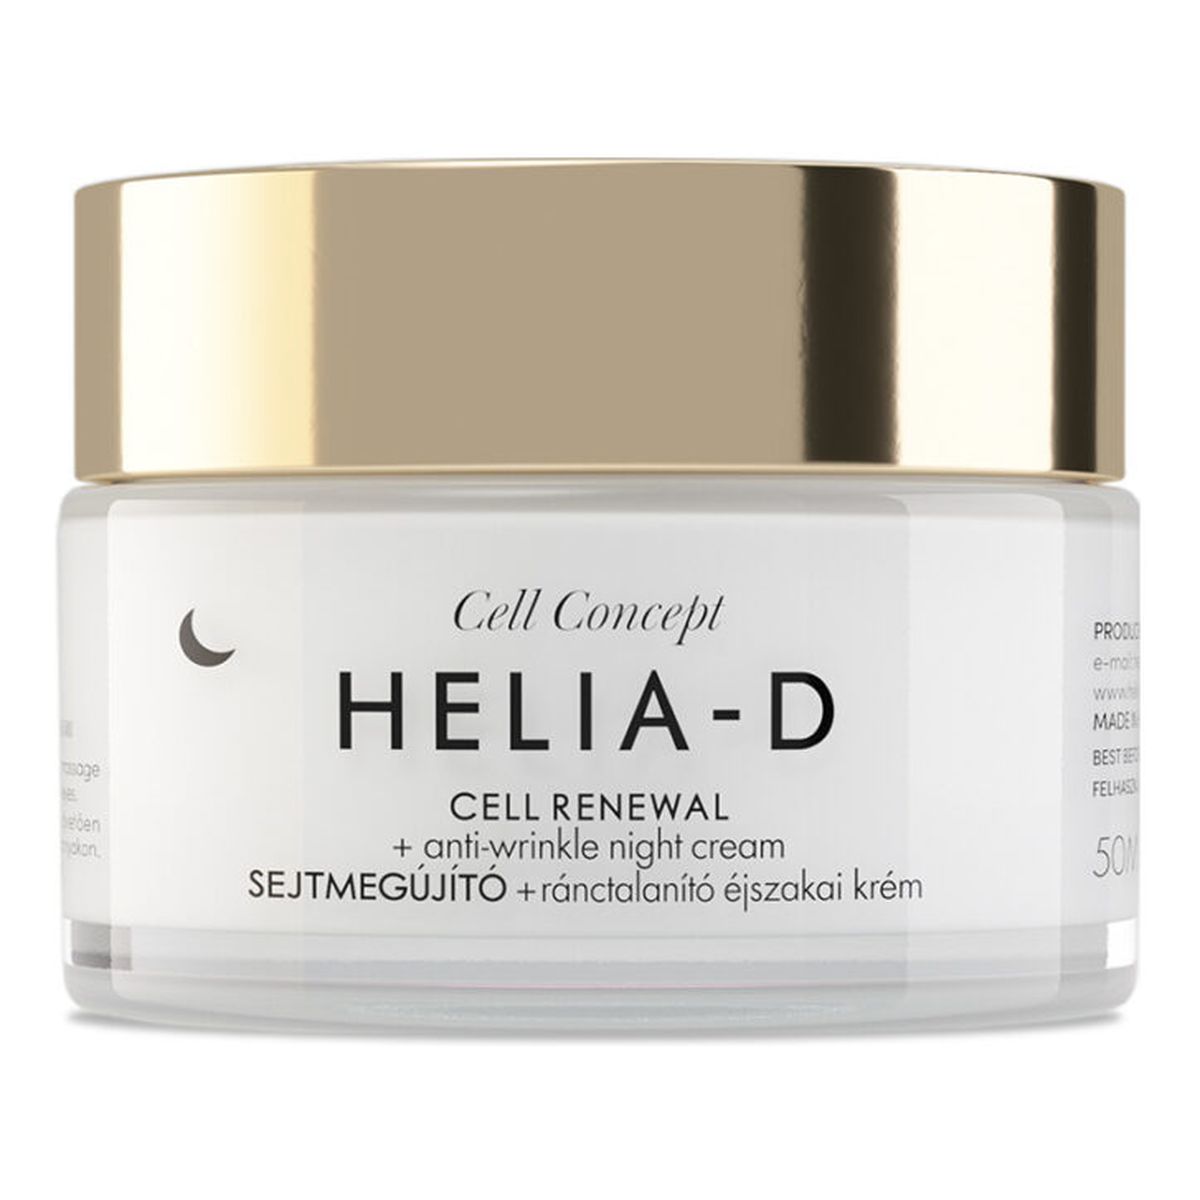 Helia-D Cell Concept Cell Renewal + Anti-Wrinkle Night Cream 55+ przeciwzmarszczkowy Krem na noc 50ml